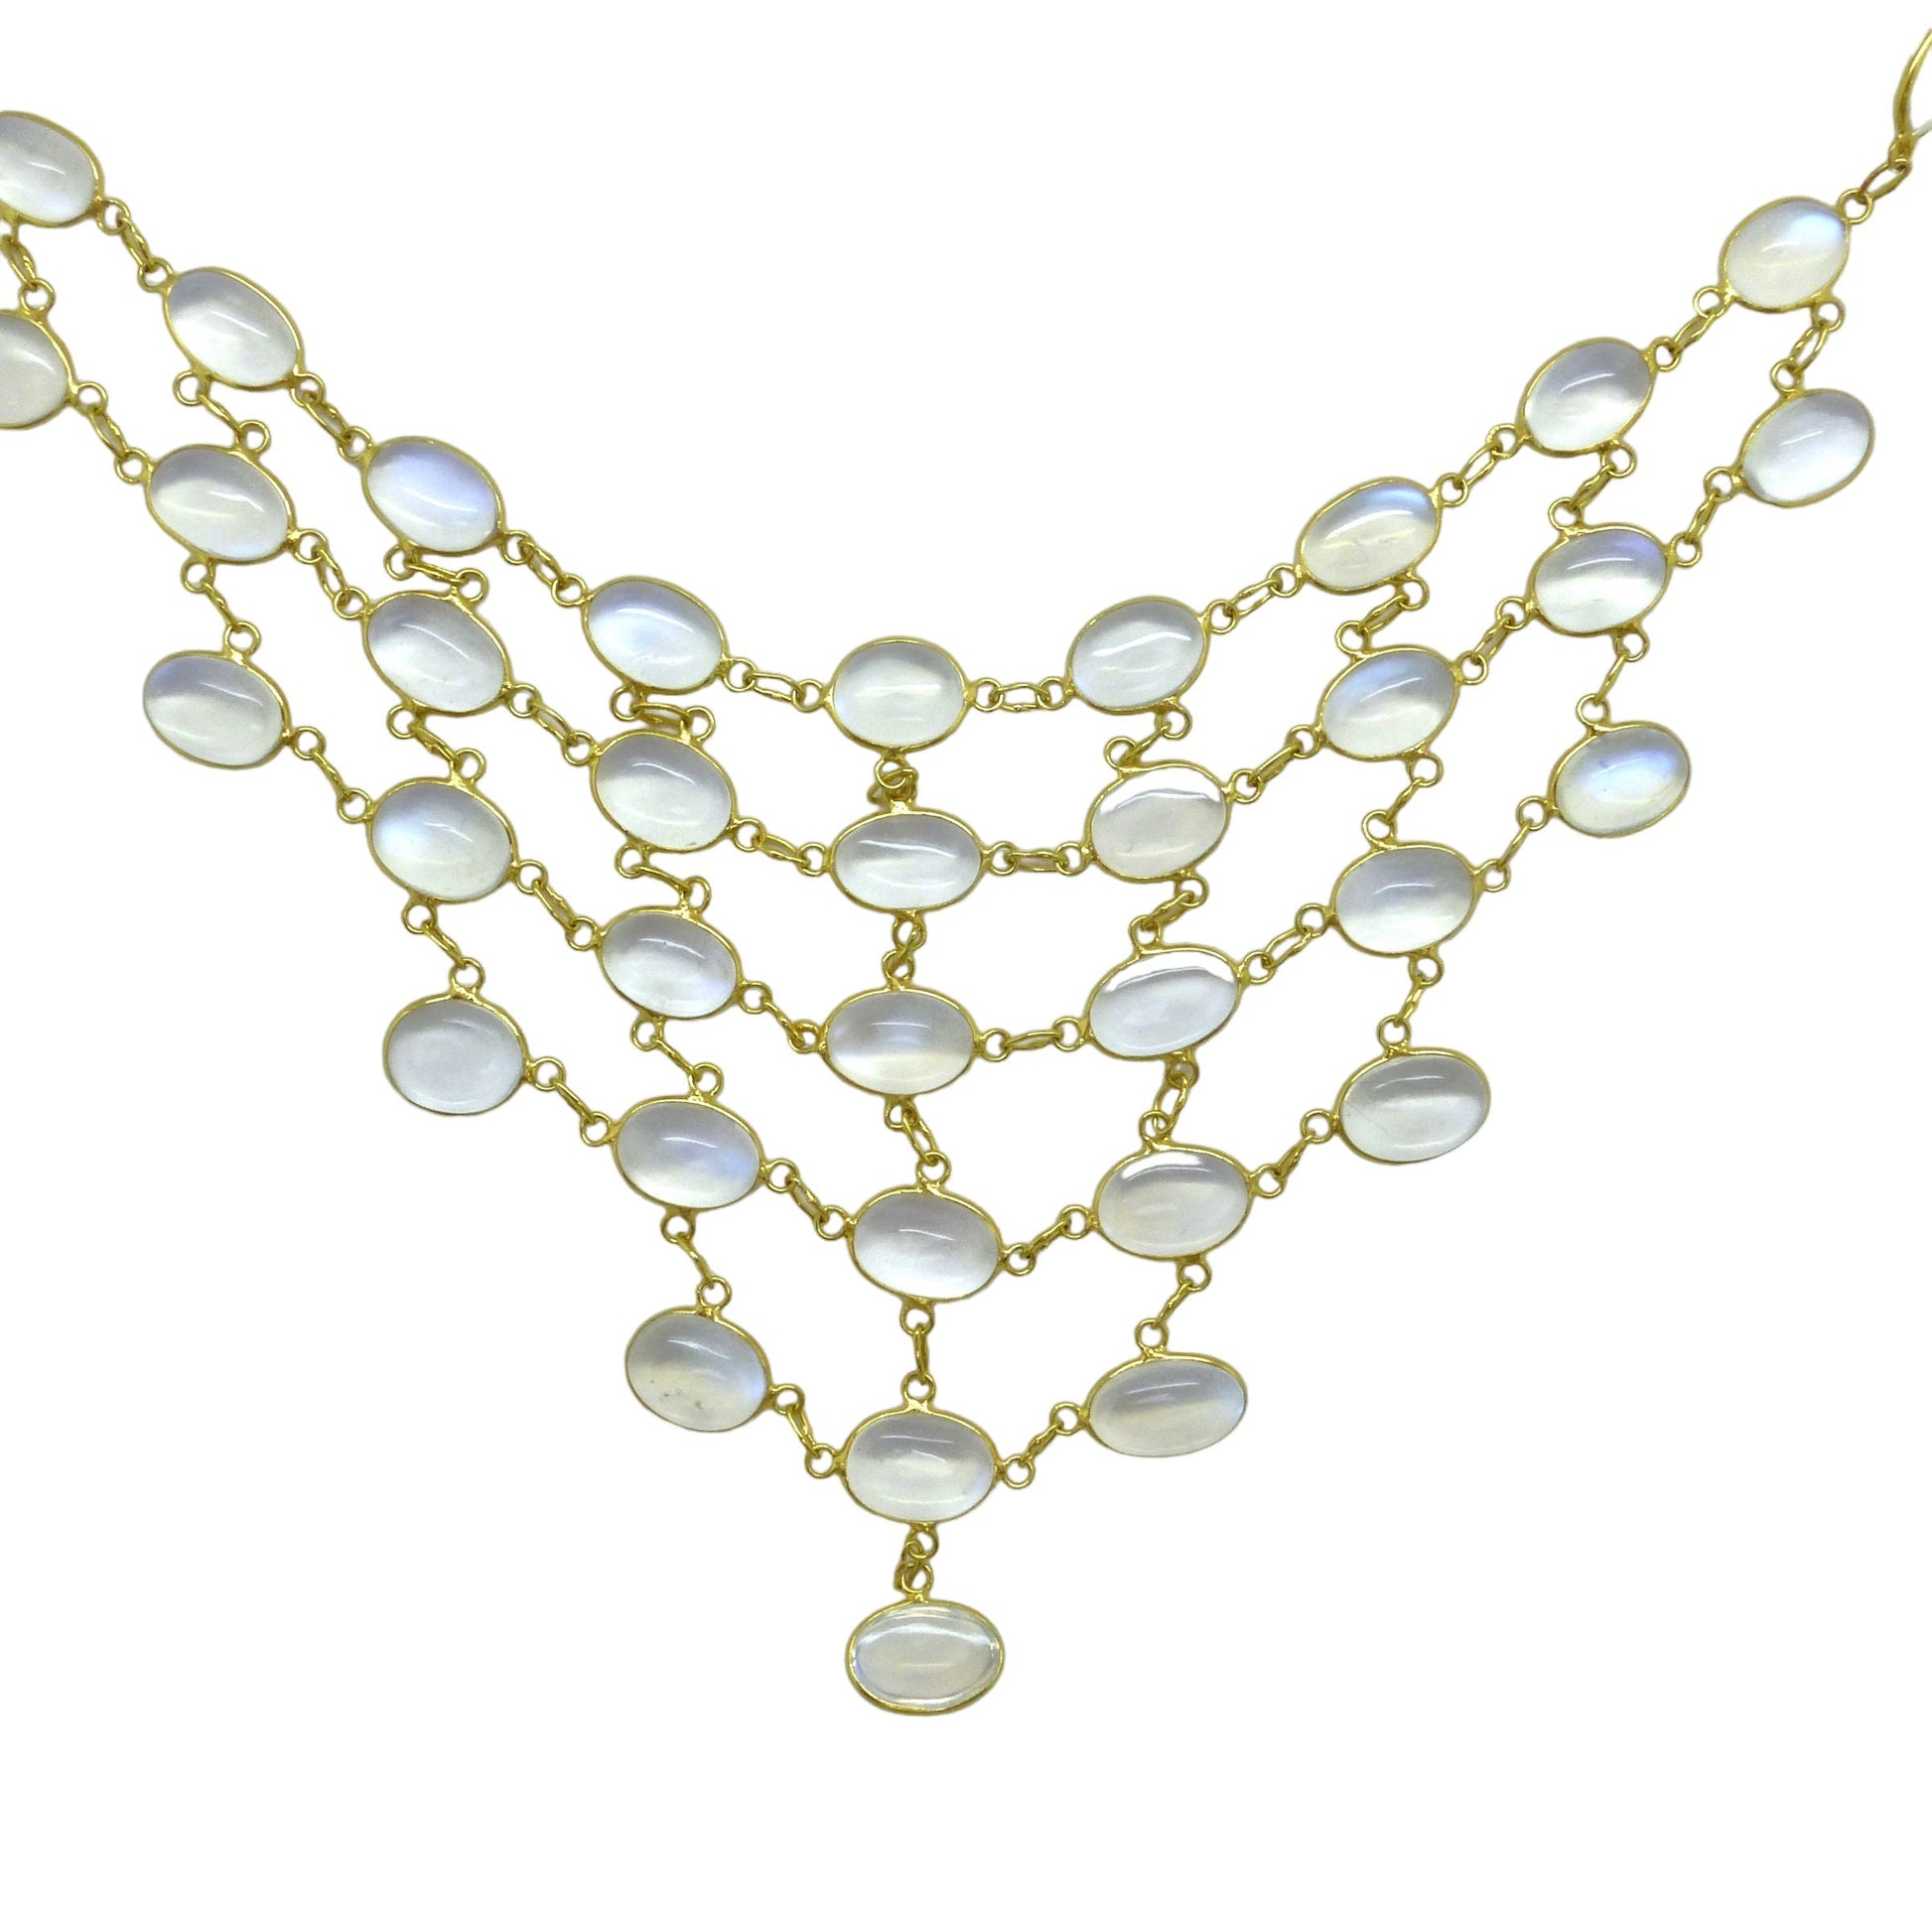 Stunning vintage 14ct & 9ct gold moonstone fringe festoon necklace